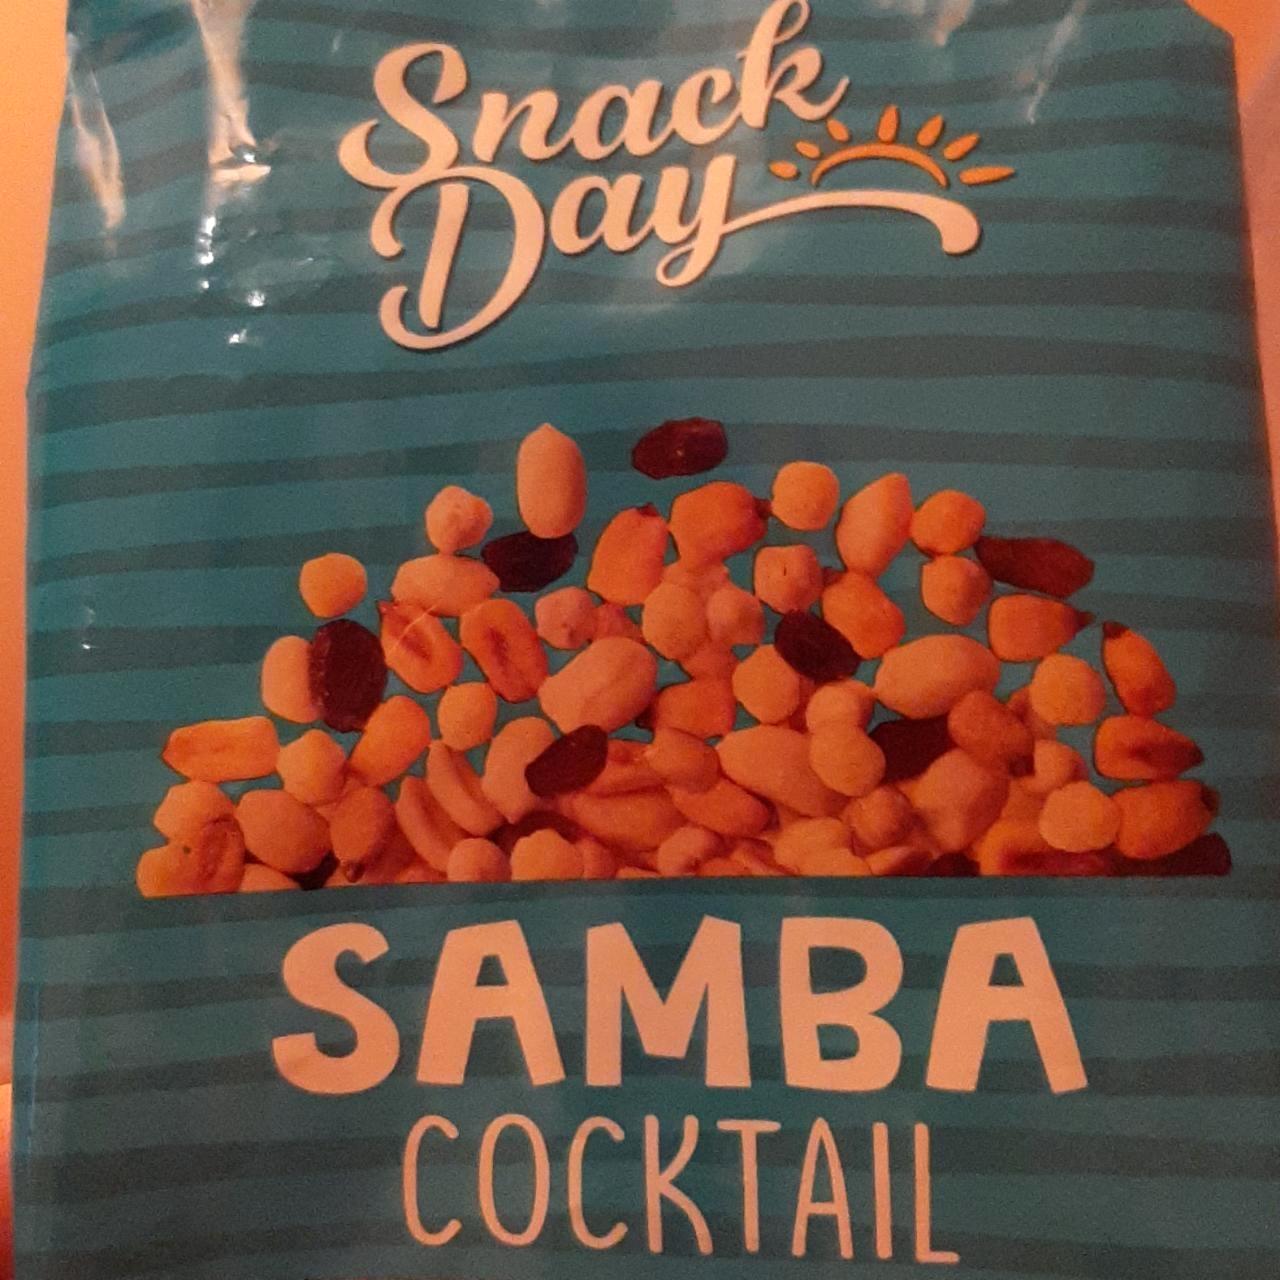 Képek - Samba cocktail Snack day